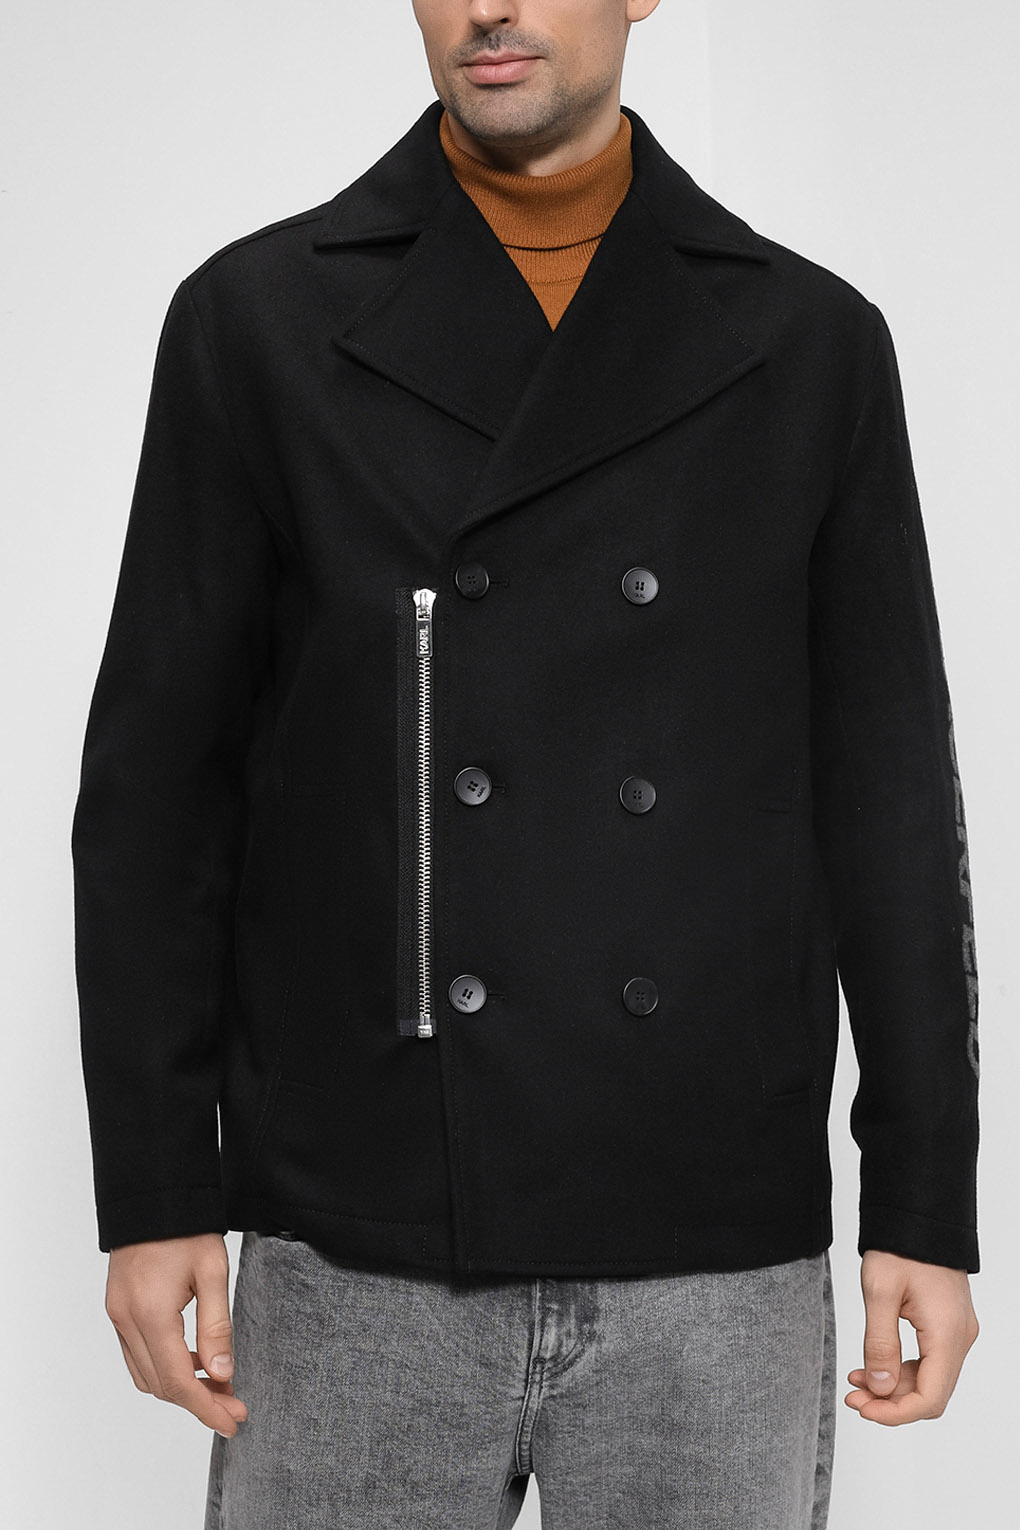 Пальто мужское Karl Lagerfeld 512799_505045 черное 48 RU